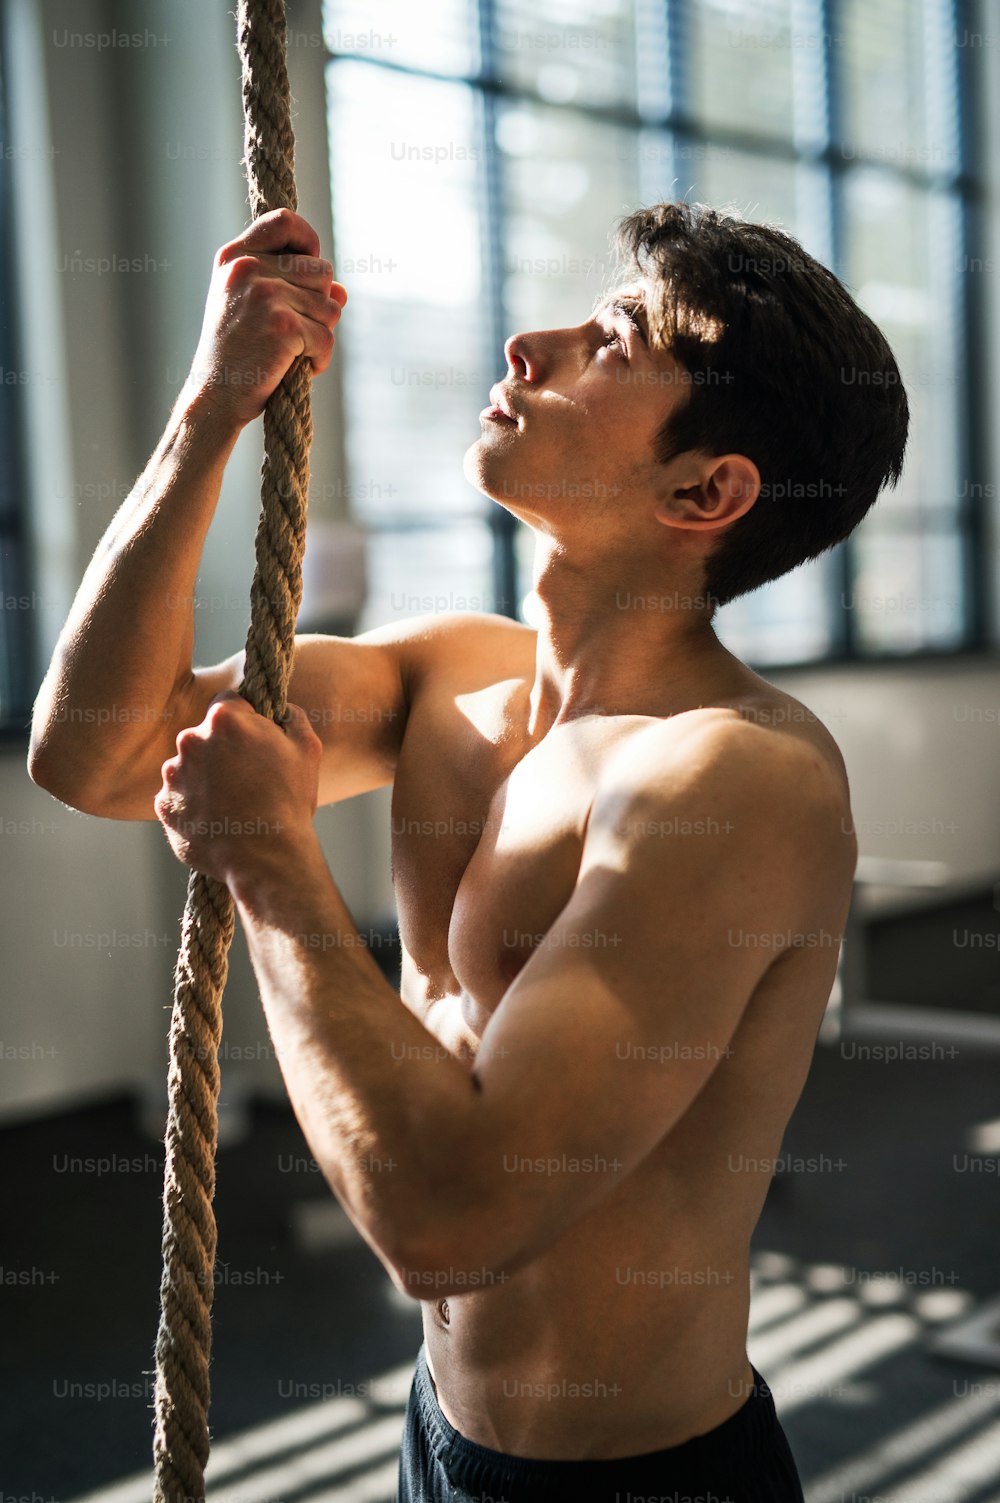 Un jeune homme en forme dans un gymnase debout seins nus, tenant une corde d’escalade.